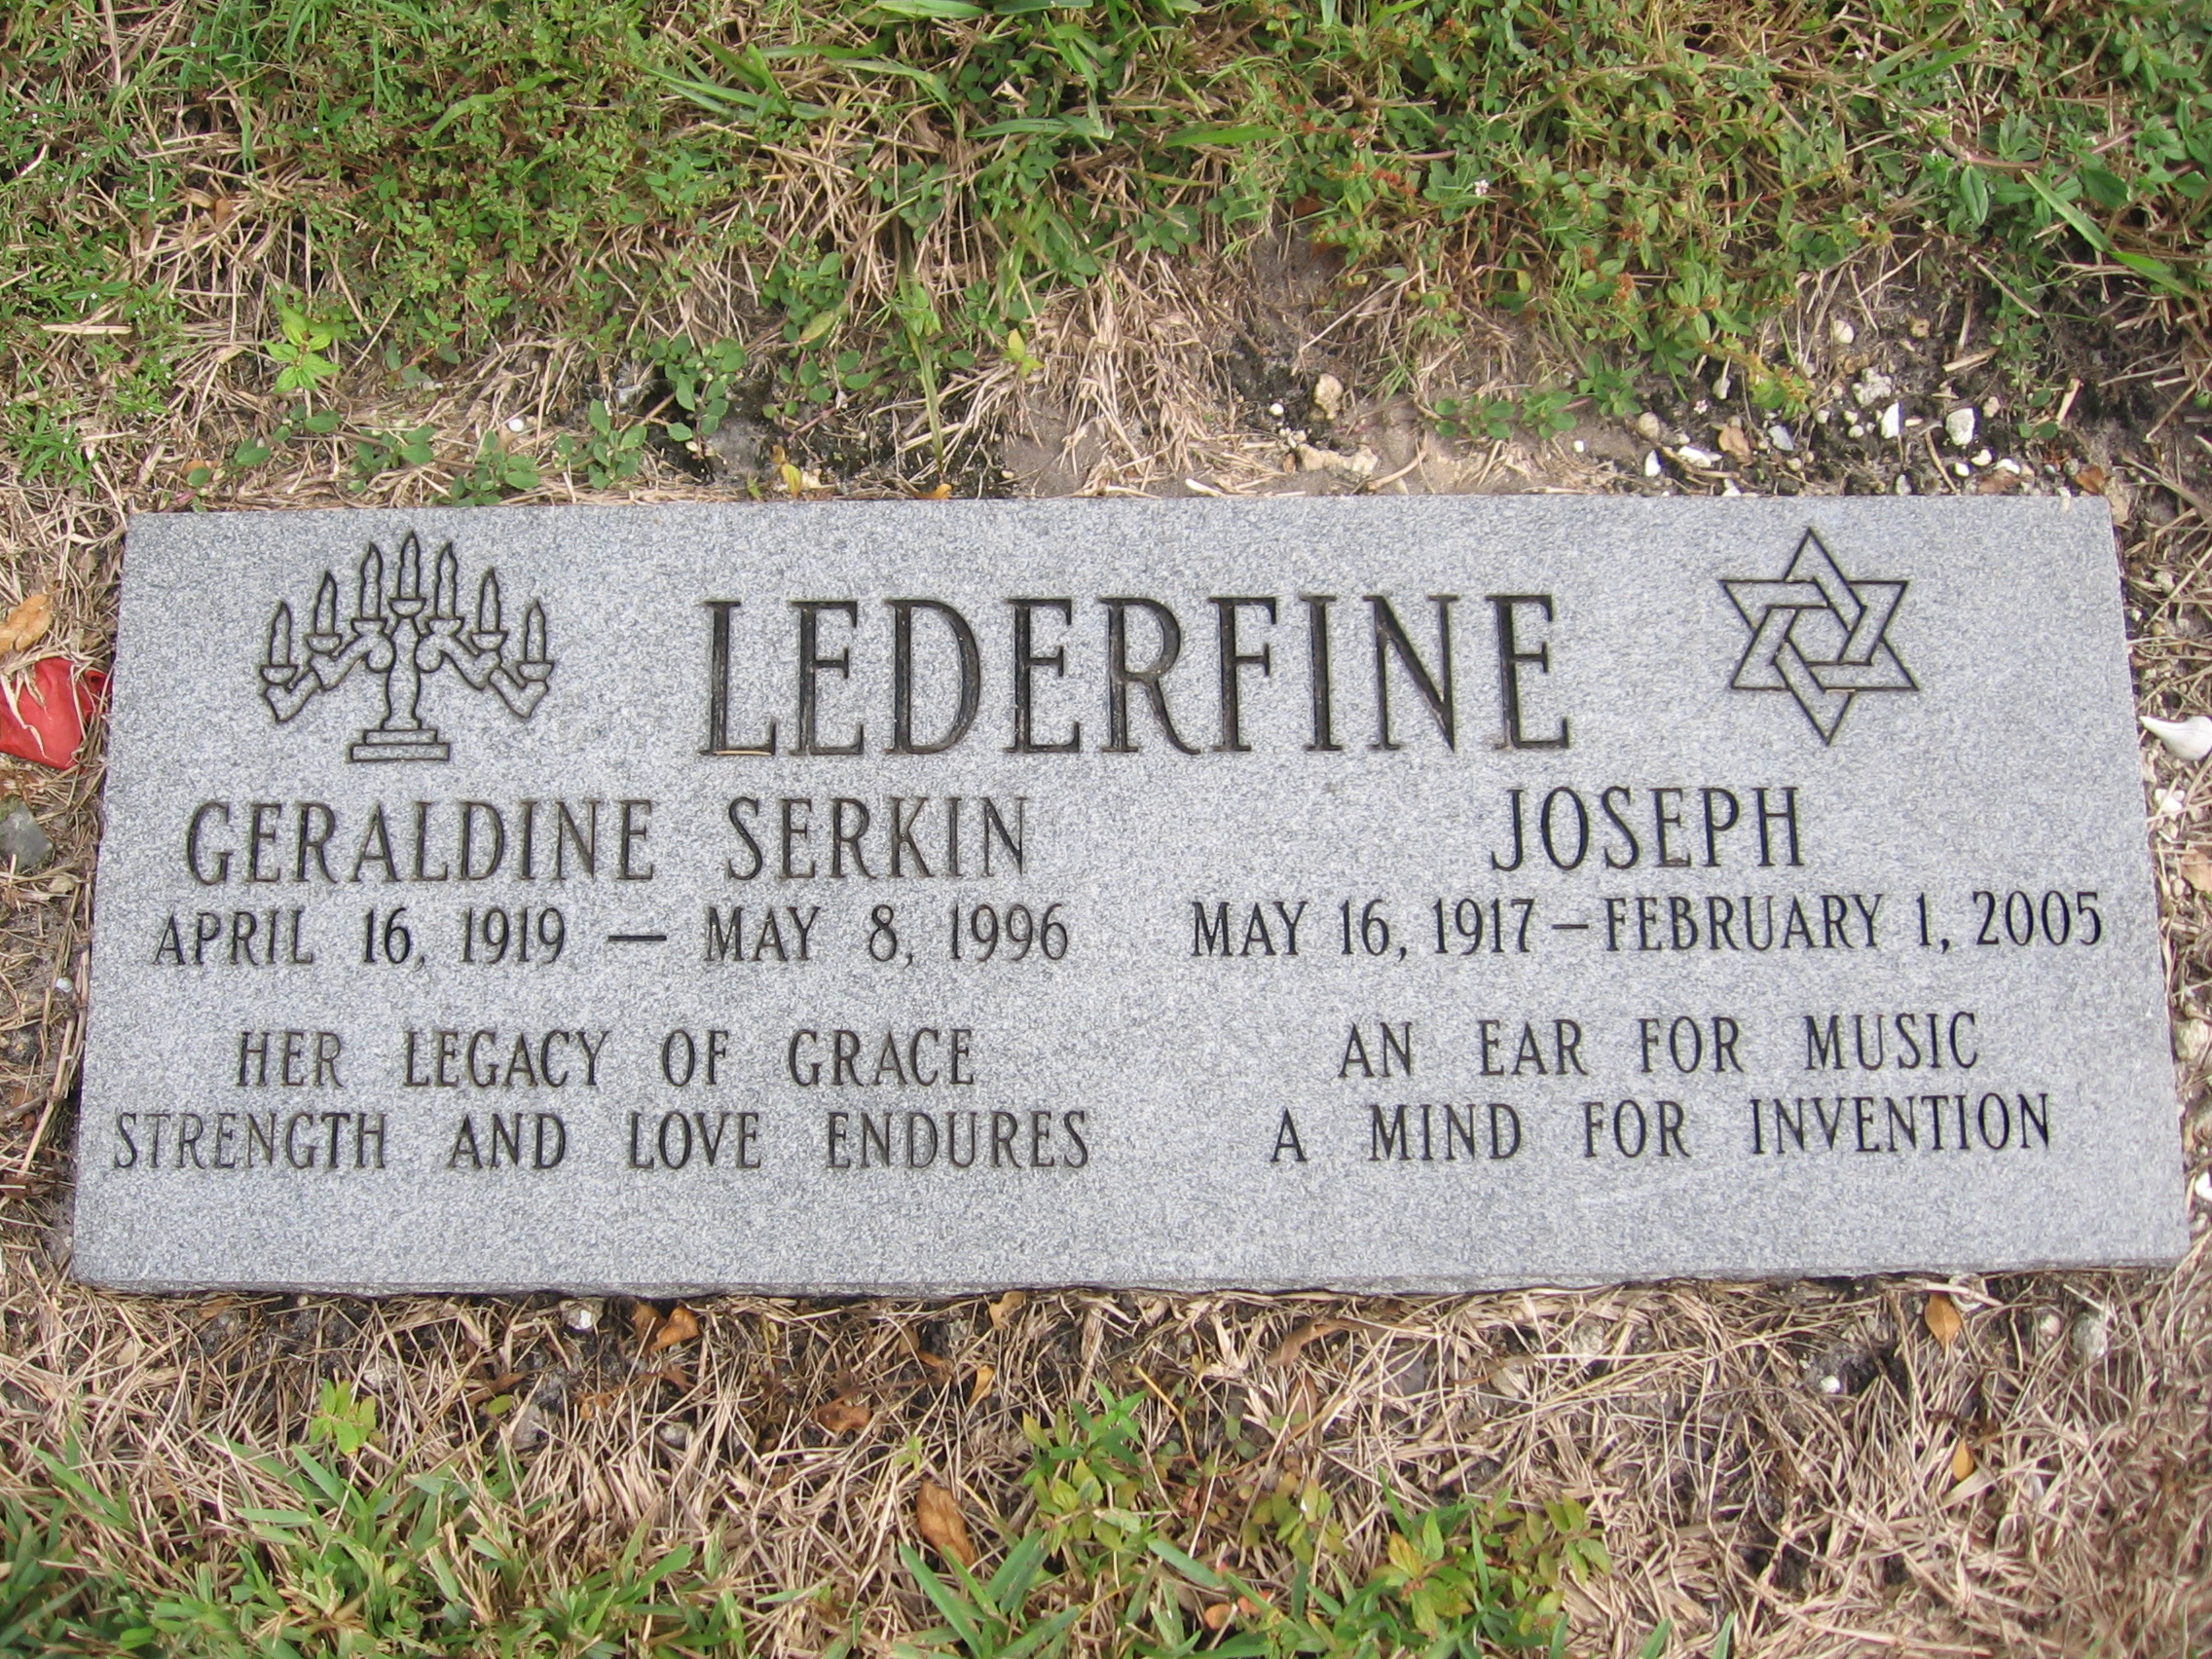 Joseph Lederfine